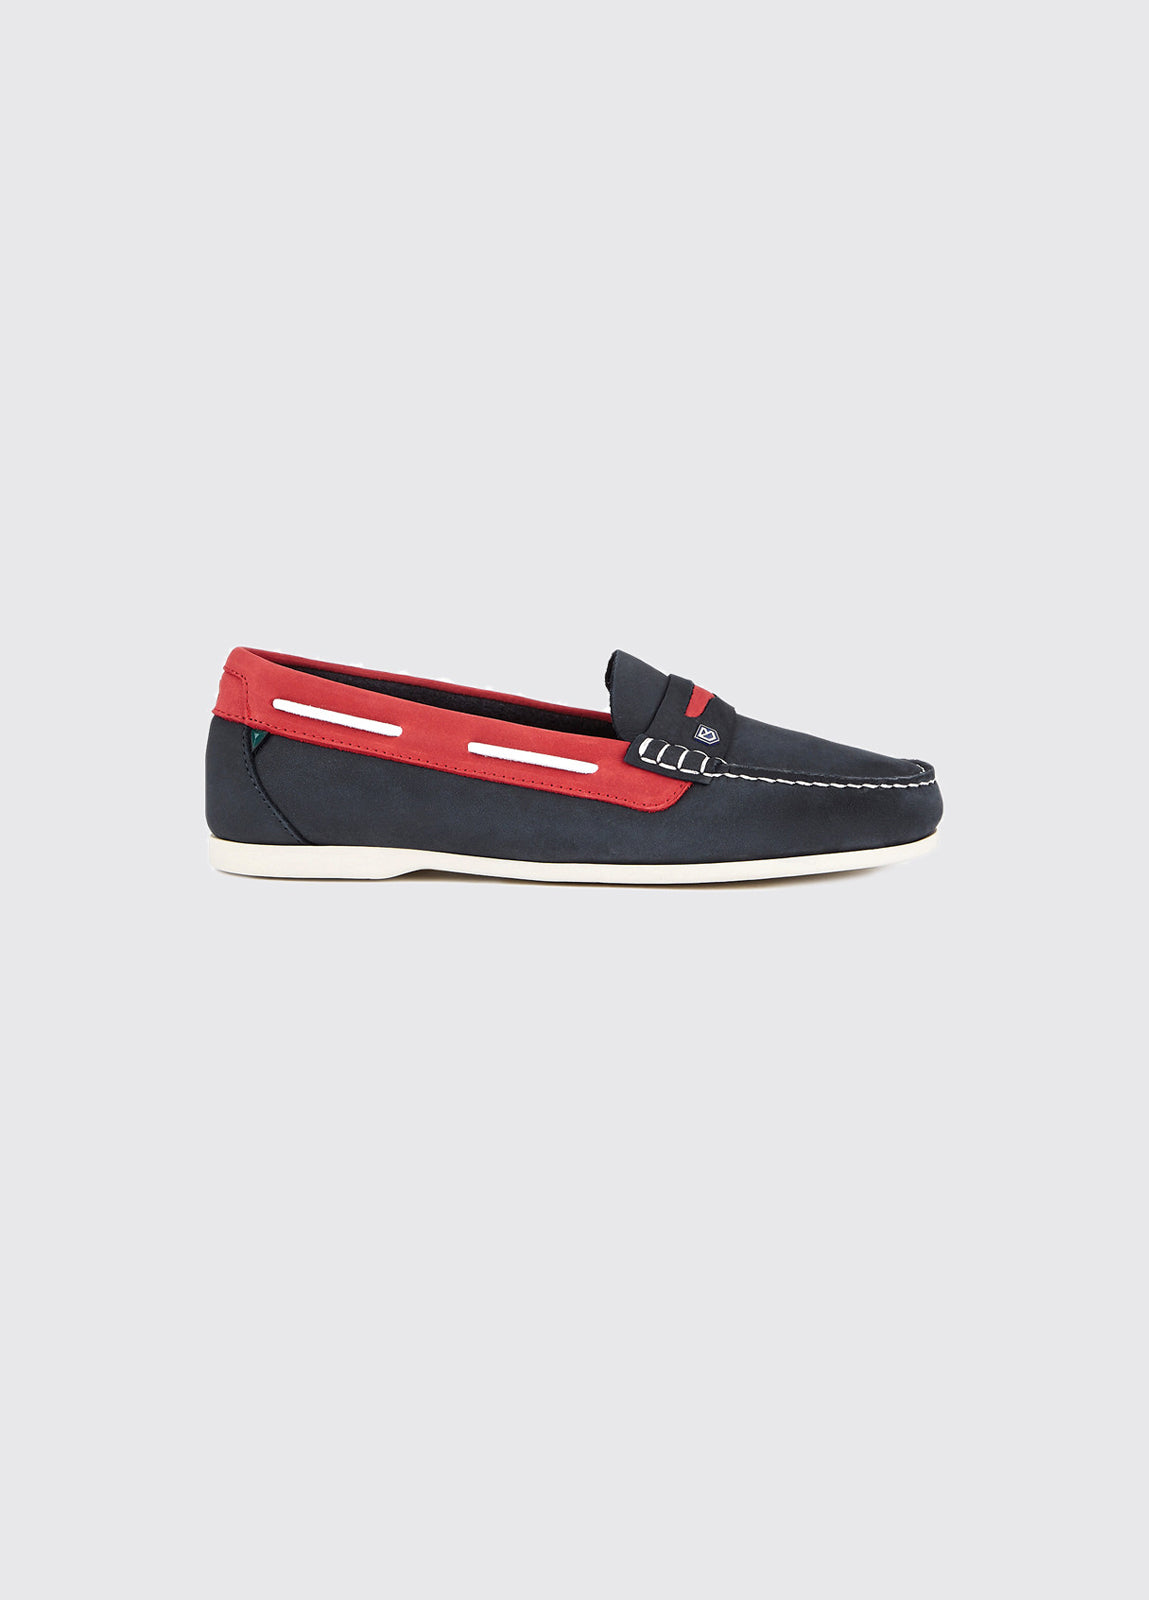 Belize Deck Shoe - Denim/Red